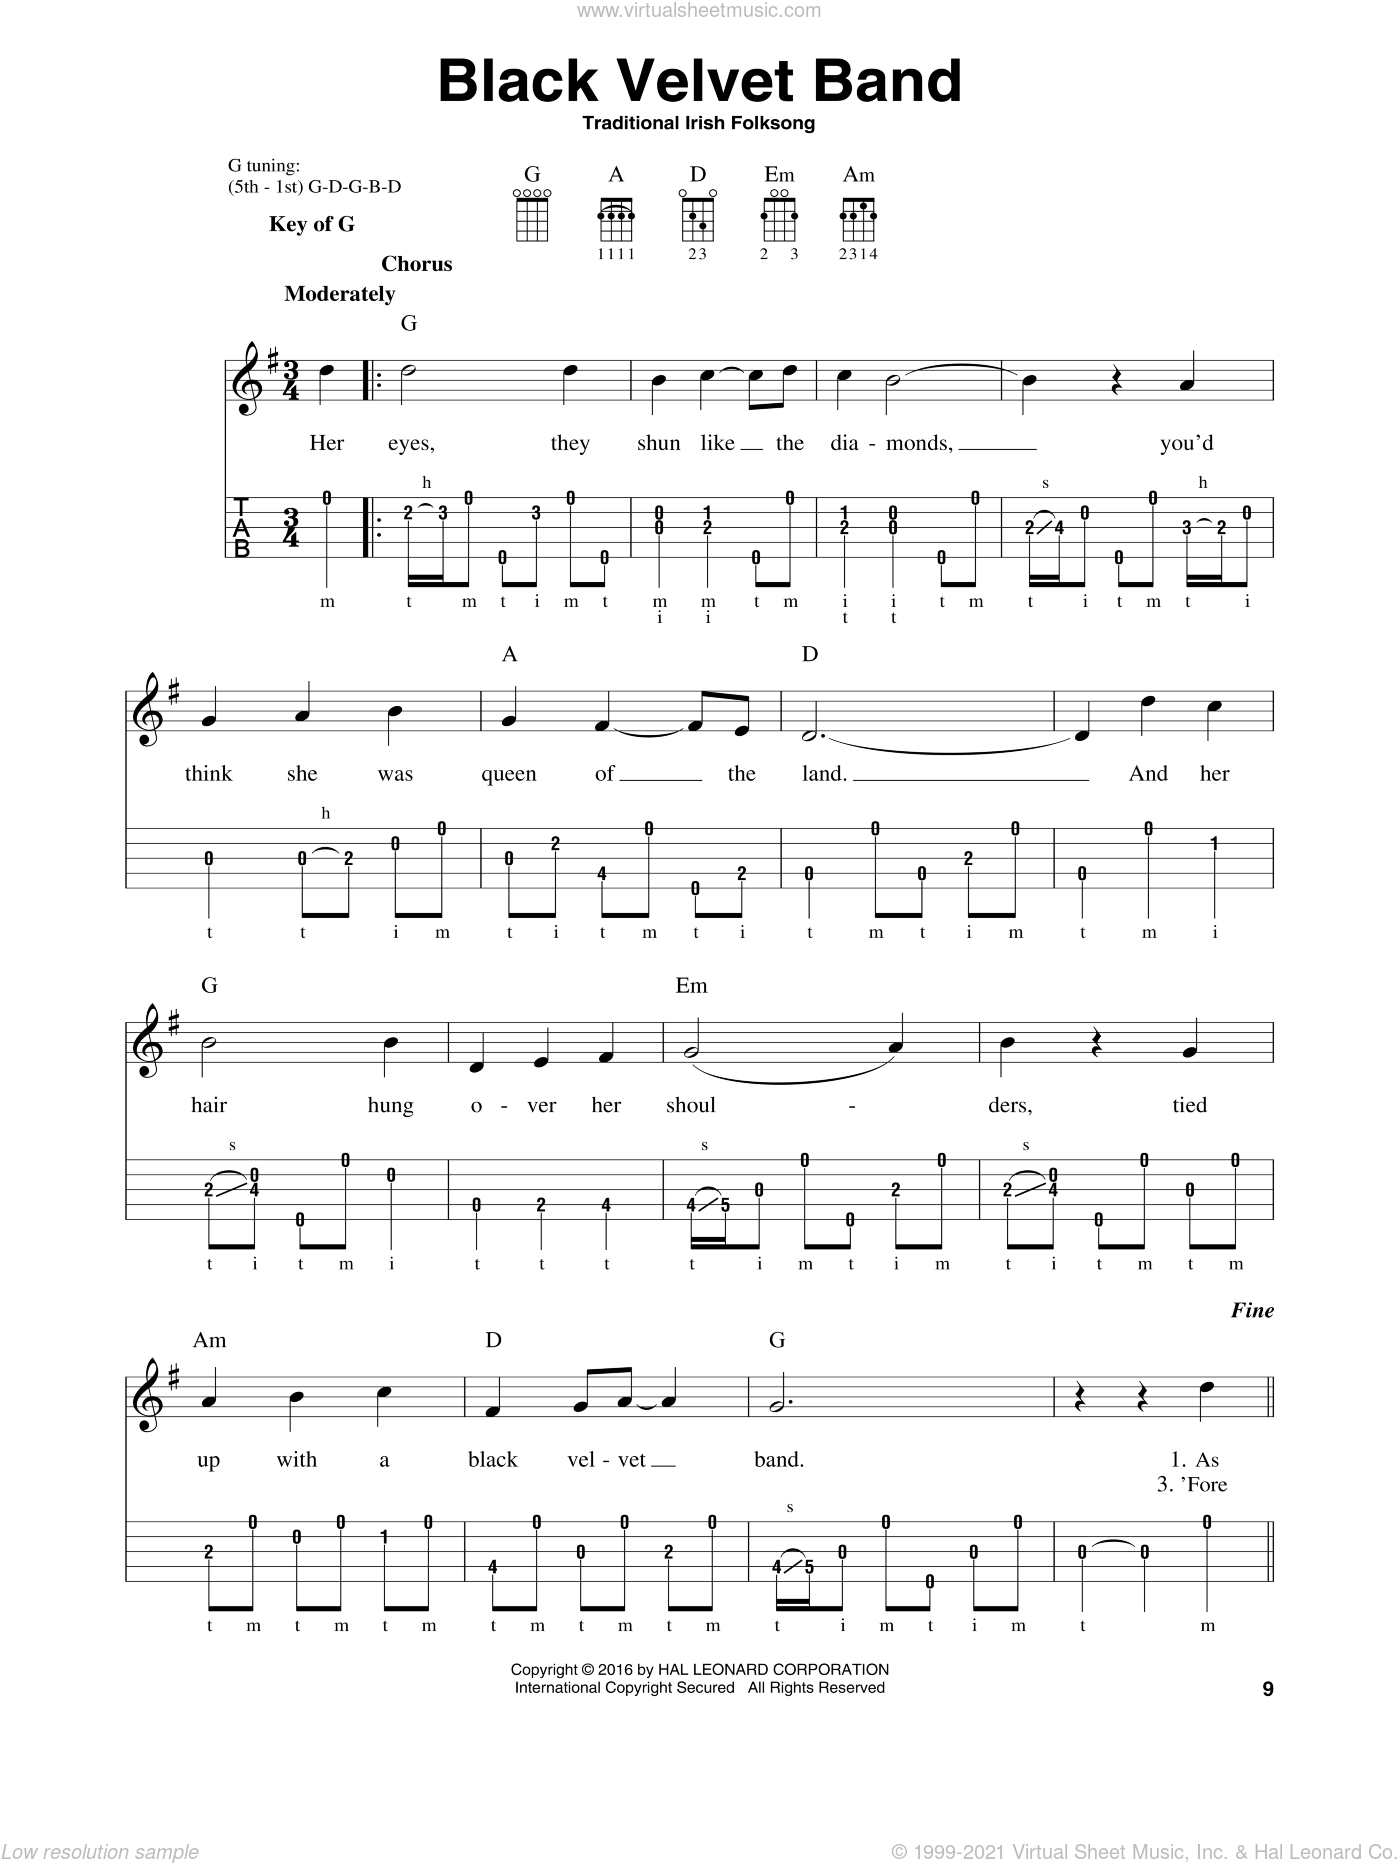 Black Velvet Band Sheet Music For Banjo Solo [PDF]